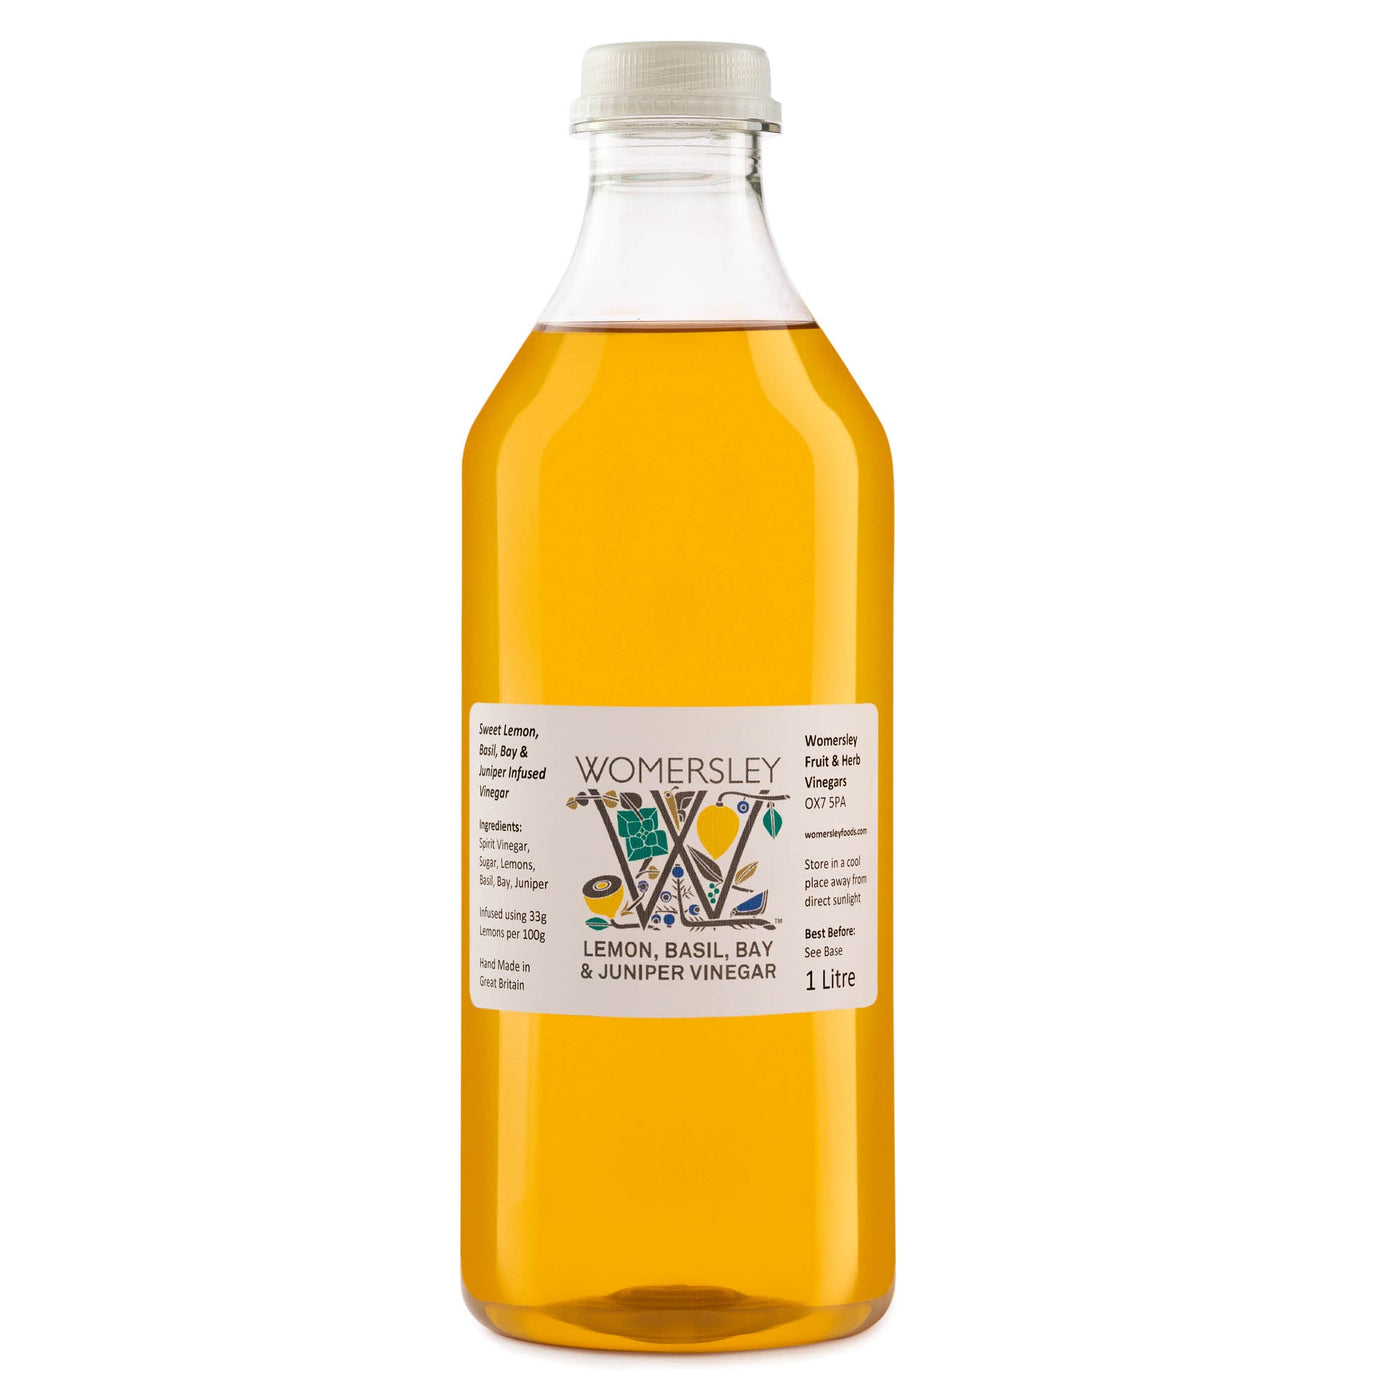 1 litre bottle of Womersley Foods Lemon, Basil, Bay & Juniper Fruit Vinegar with white background.